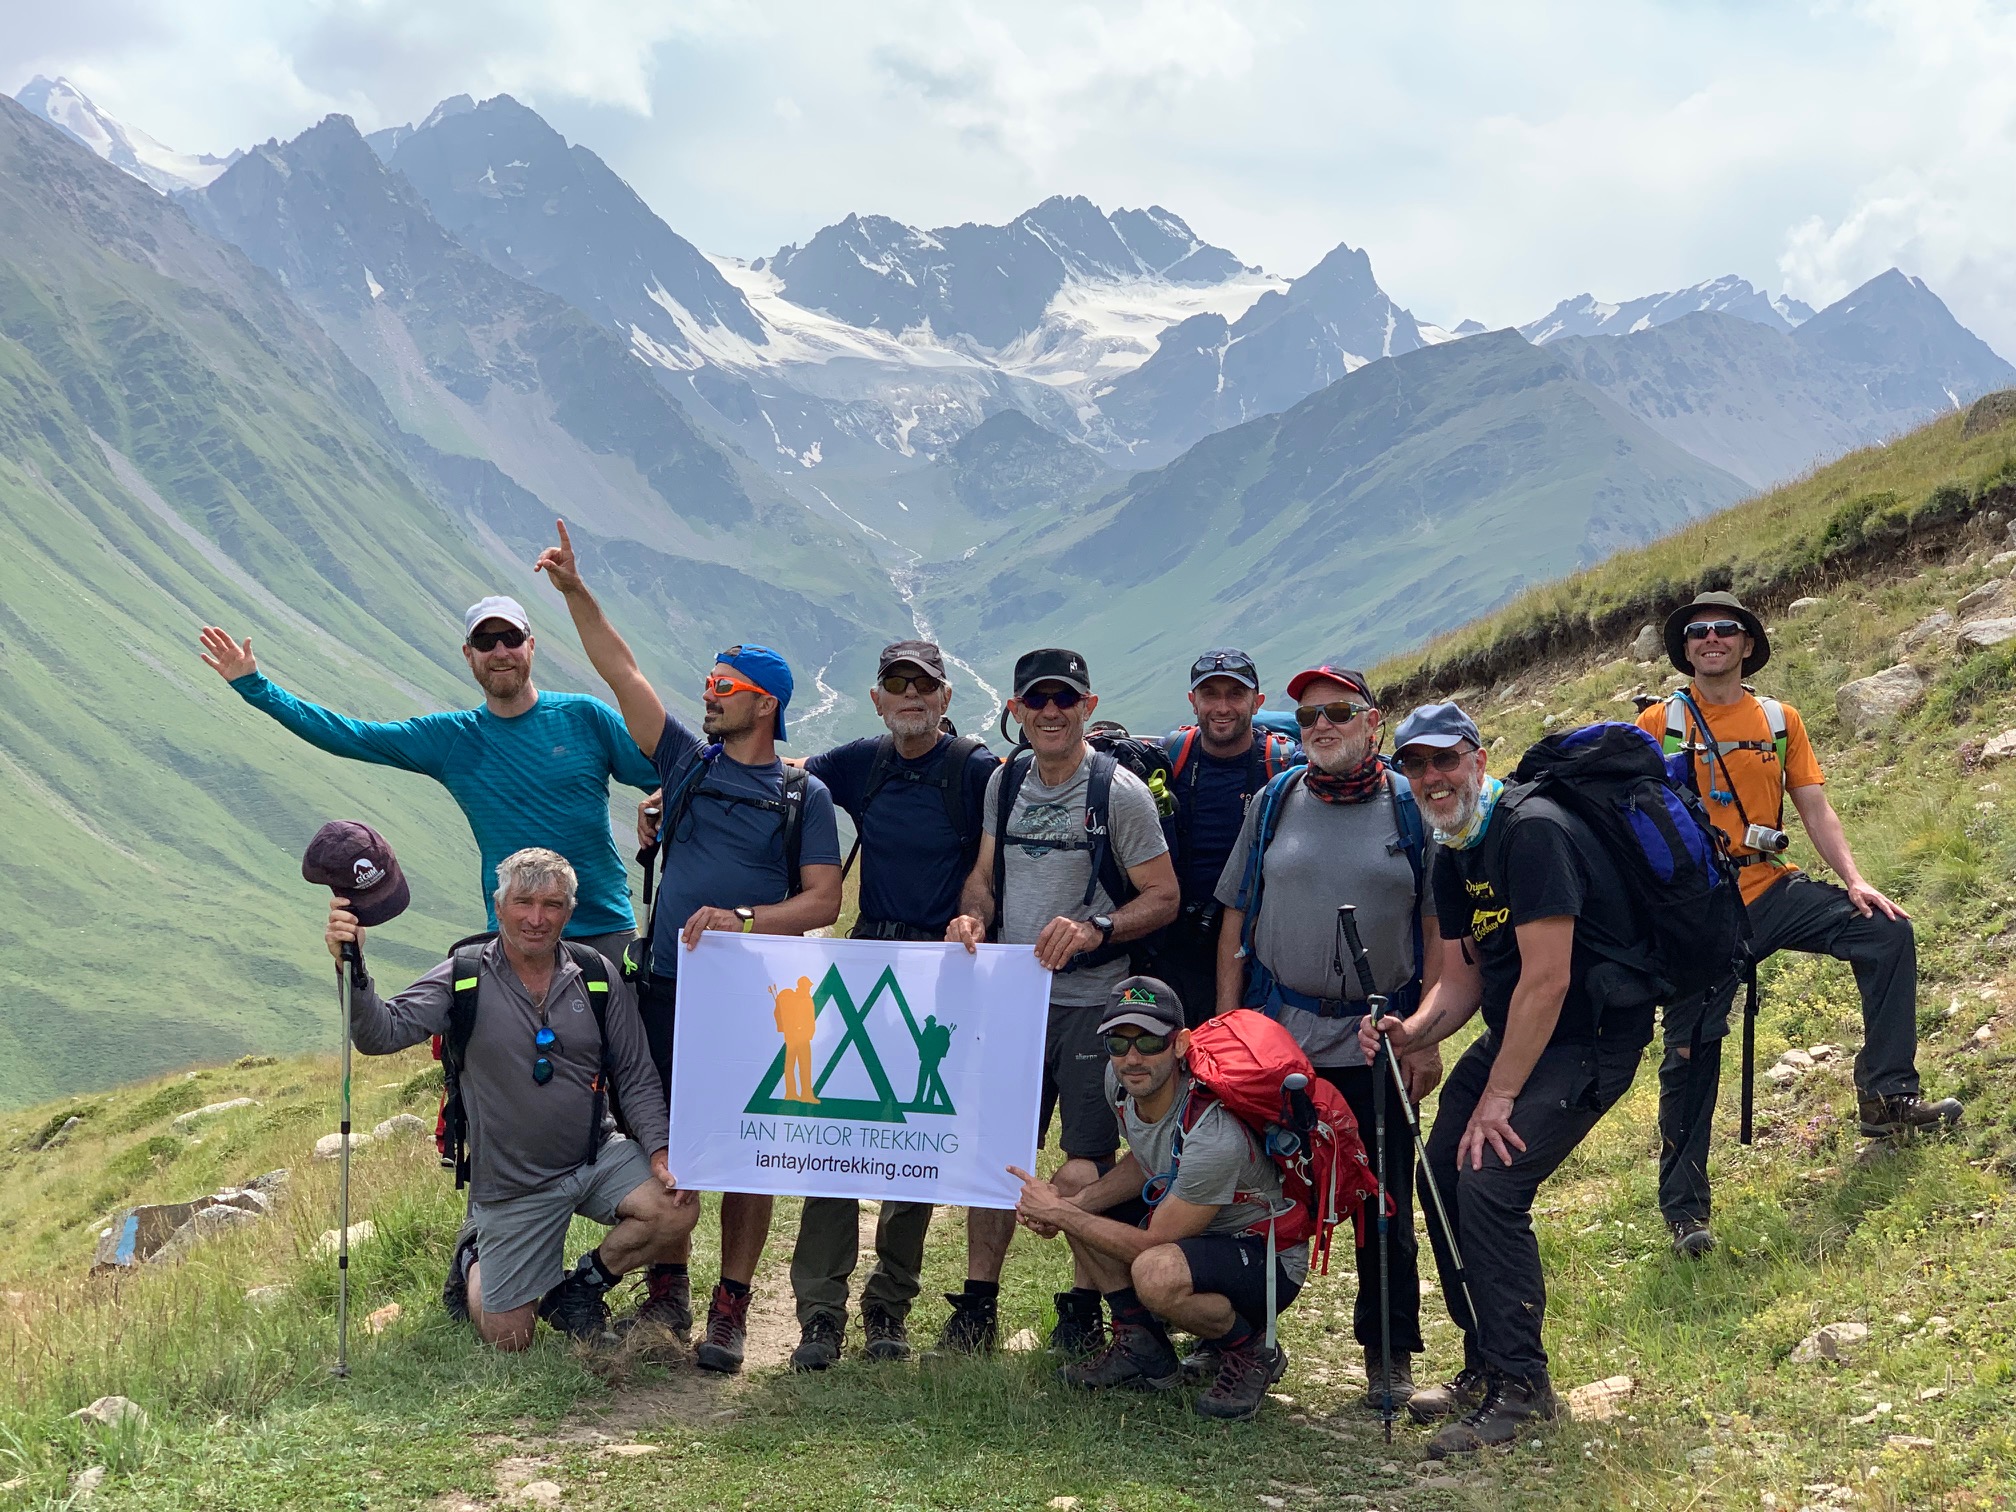 Ian Taylor Trekking team on Mount Elbrus